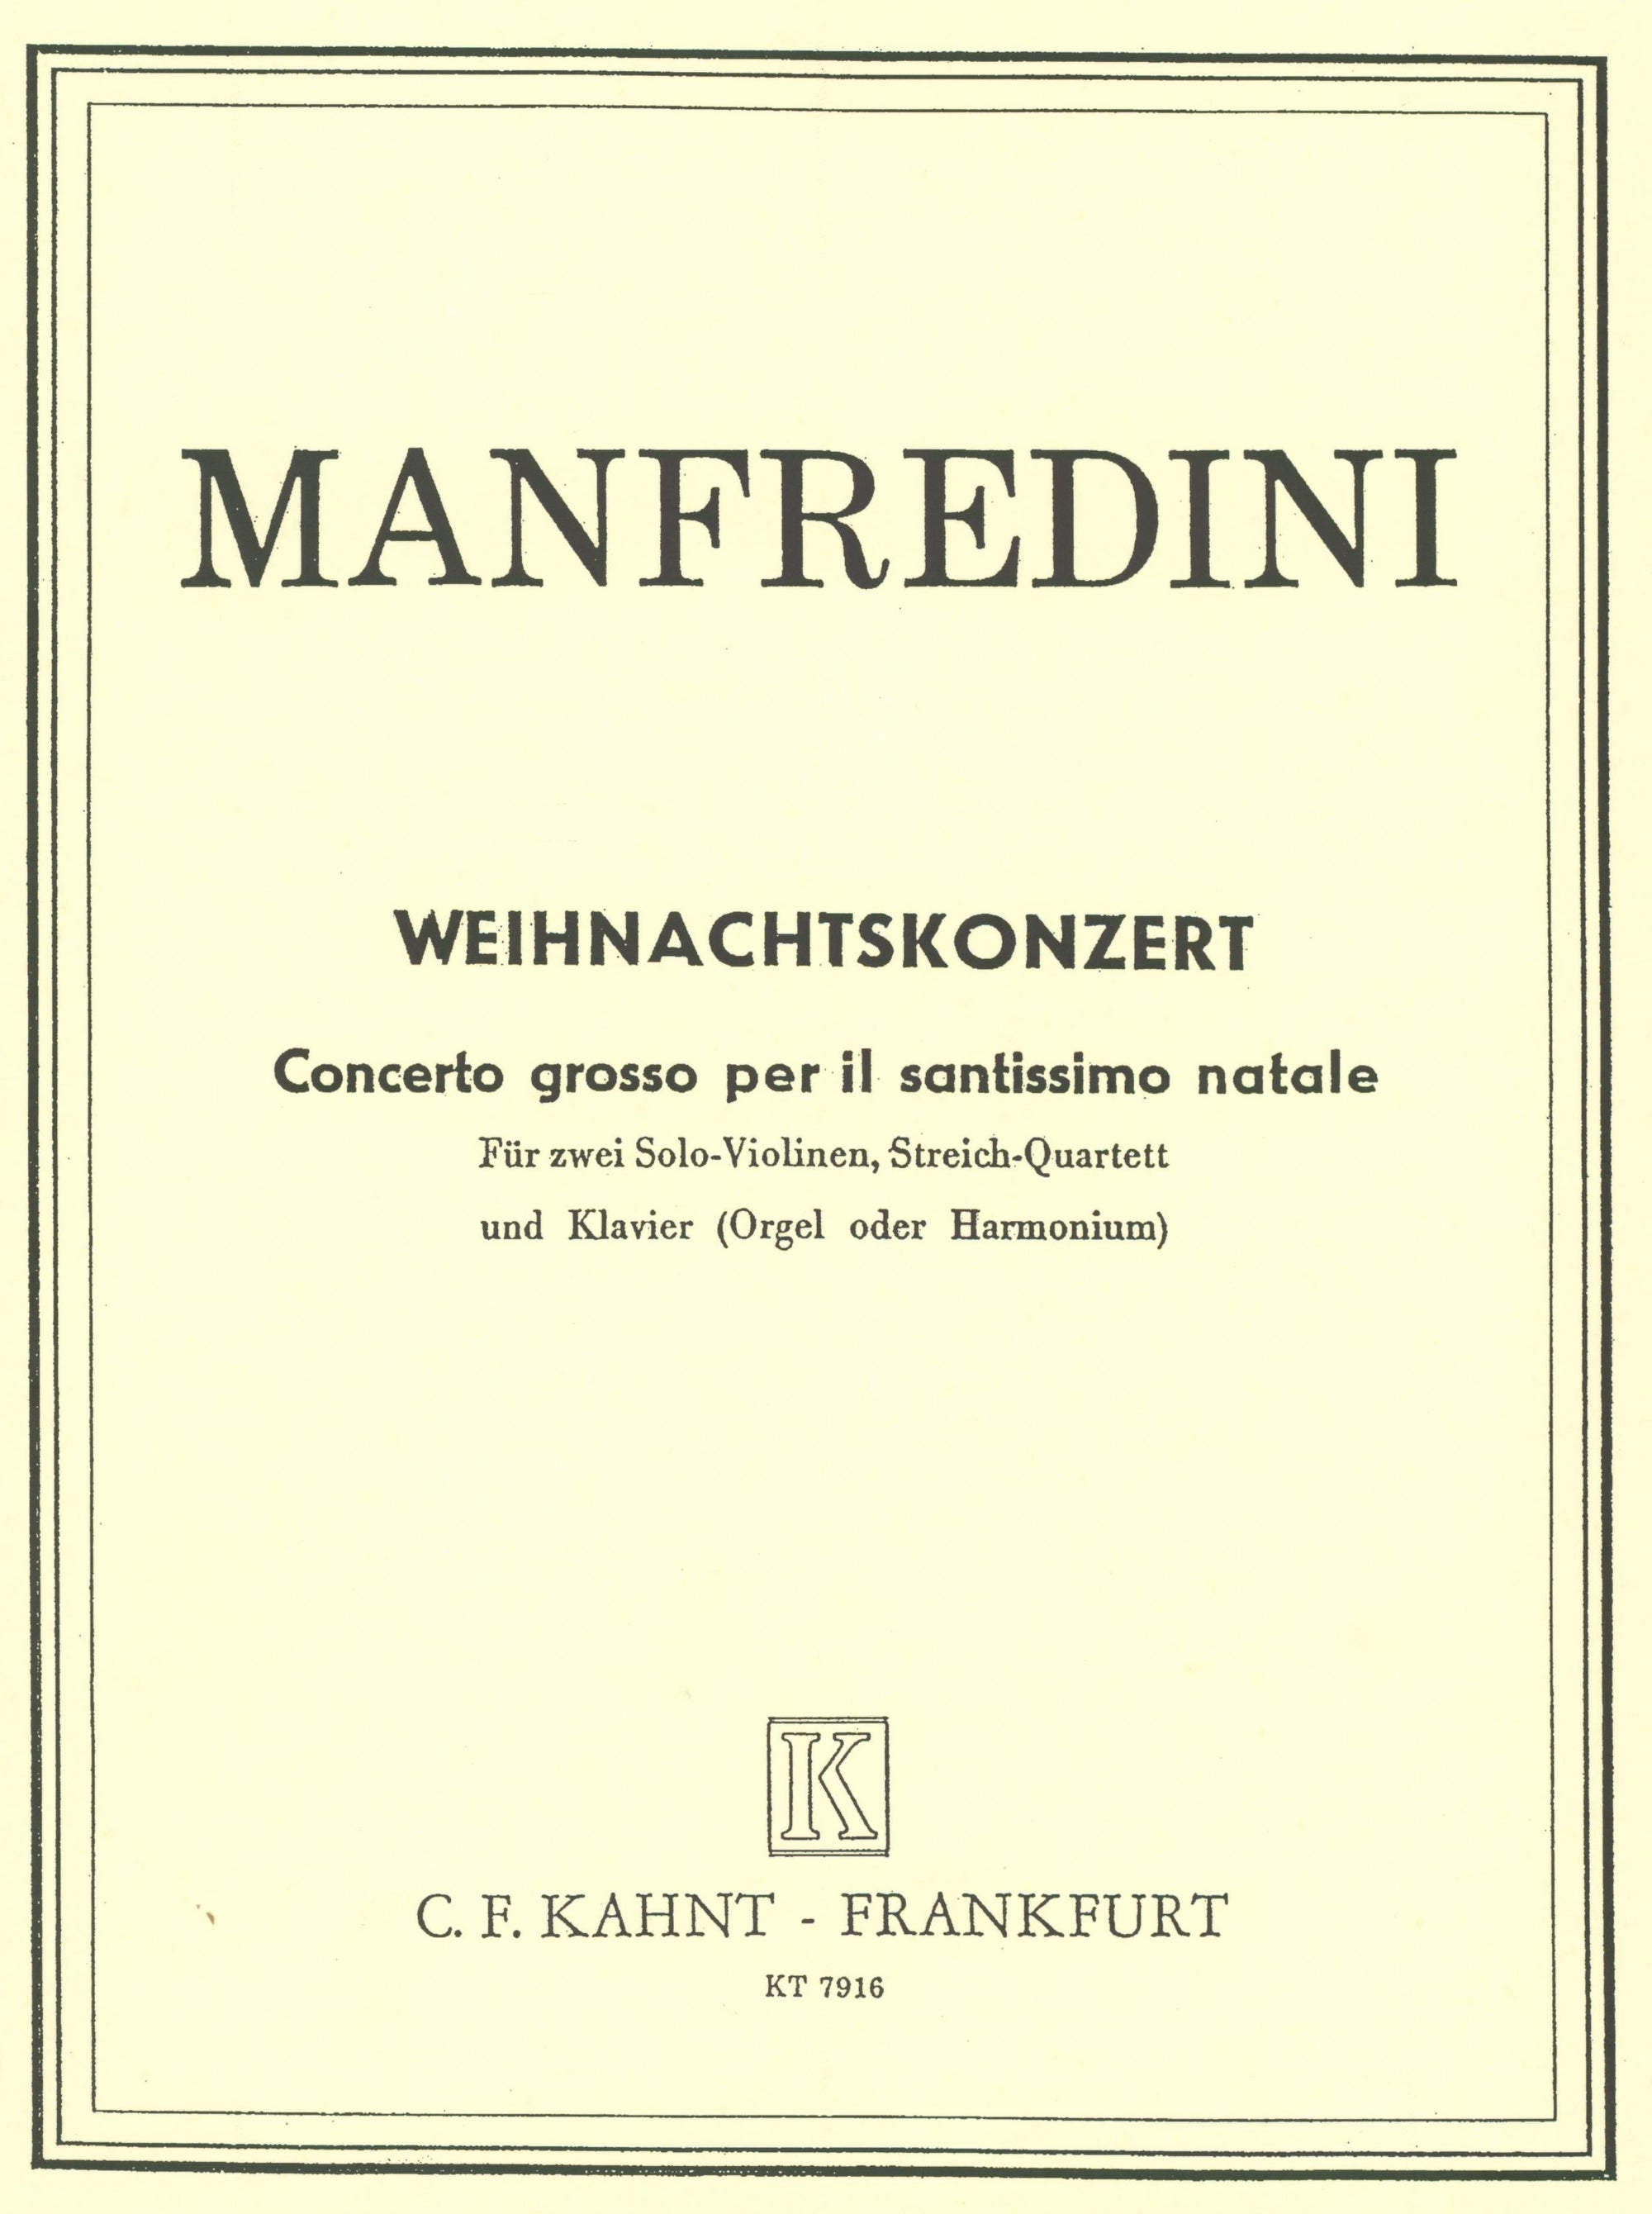 Manfredini: Concerto grosso in C, Op. 3, No. 12